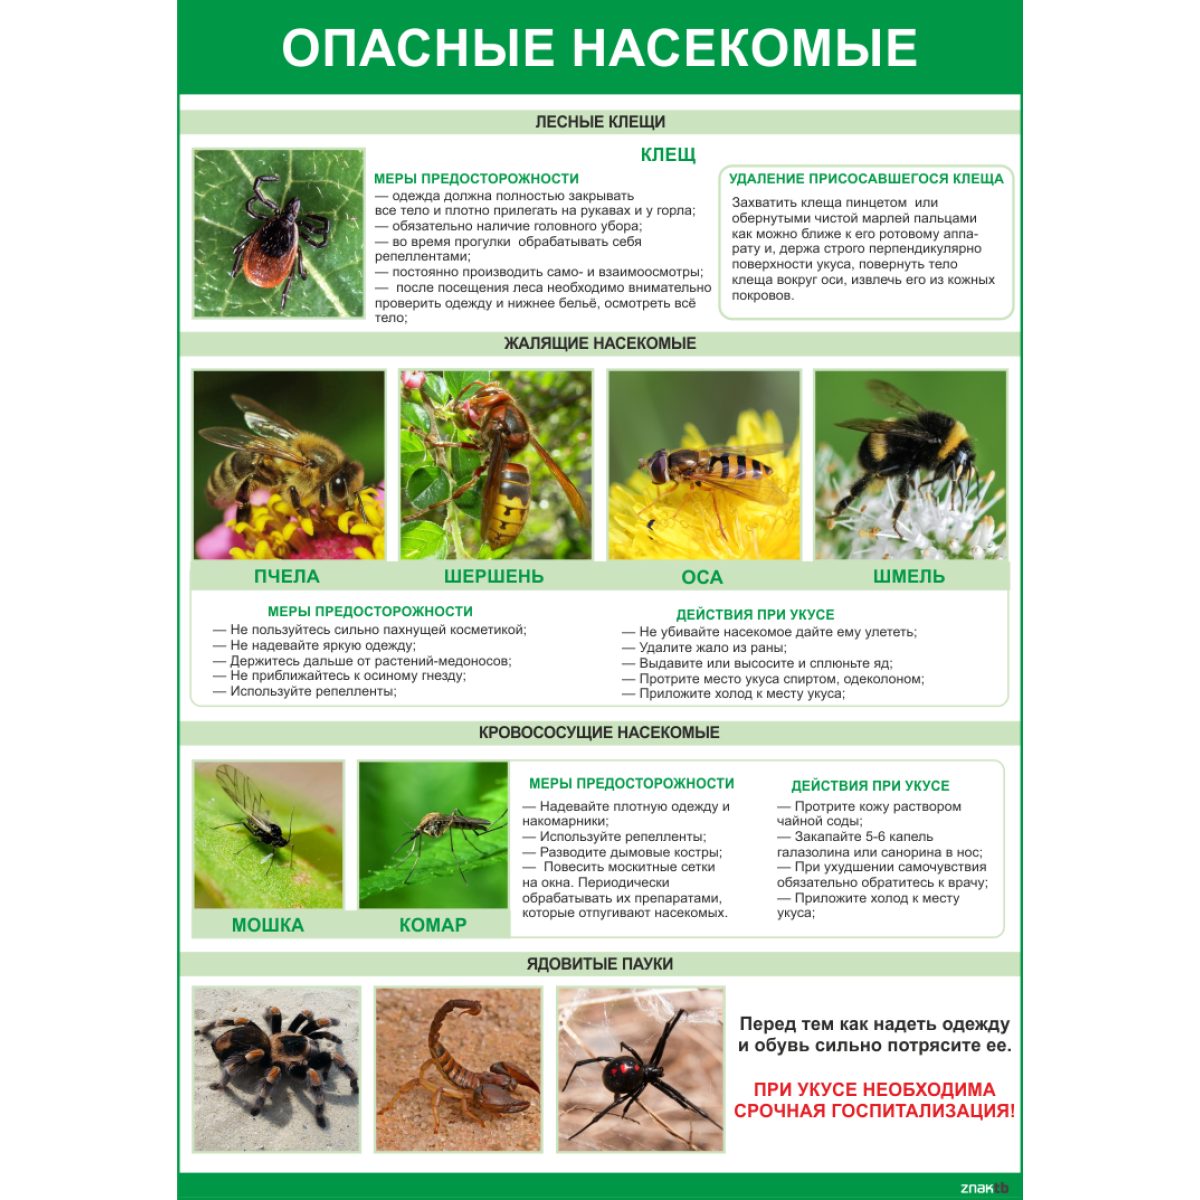 2003 Плакат Опасные насекомые